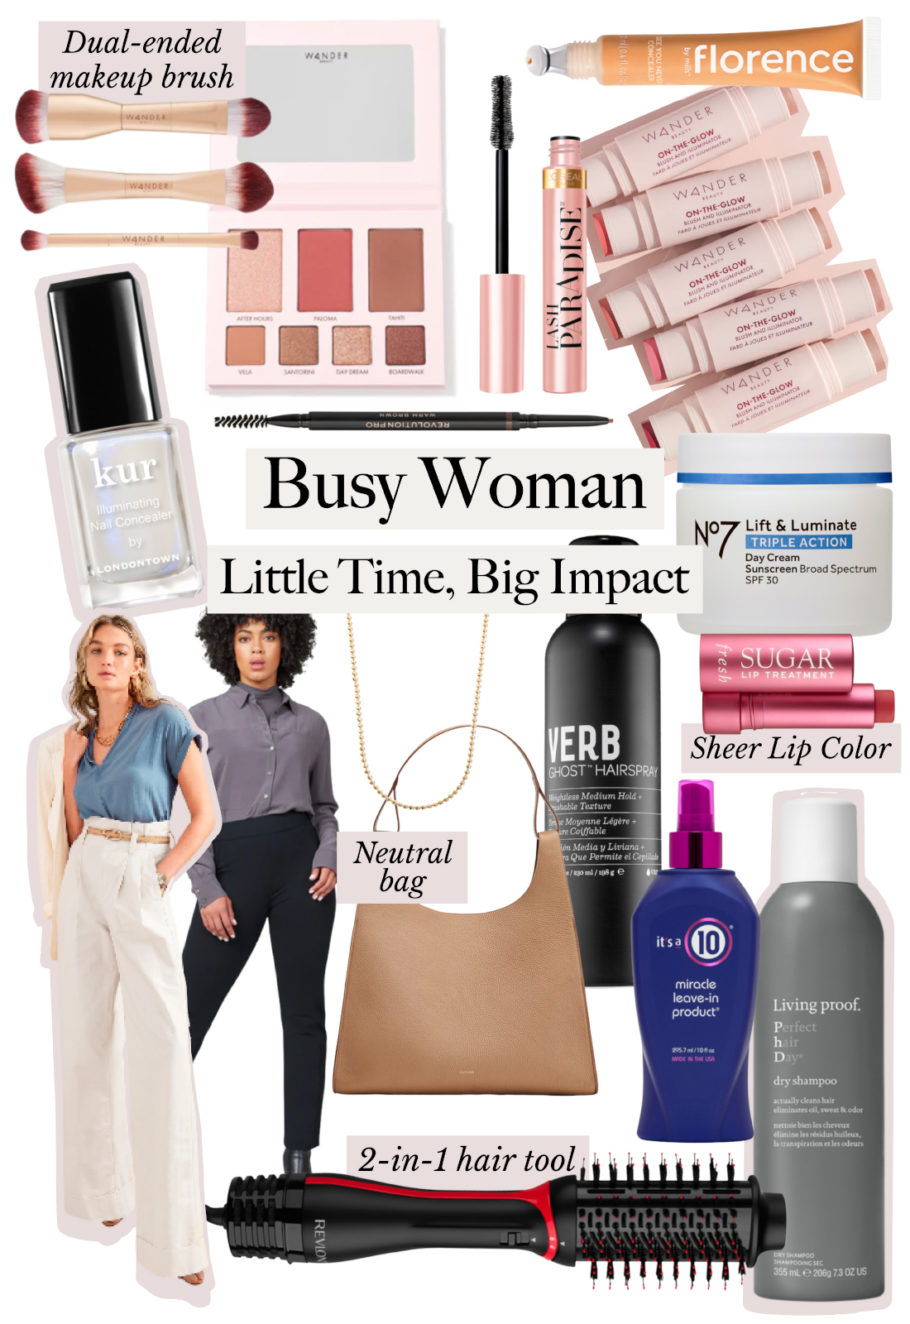 Beauty Caspule: Busy Woman, Little Time, Big Impact